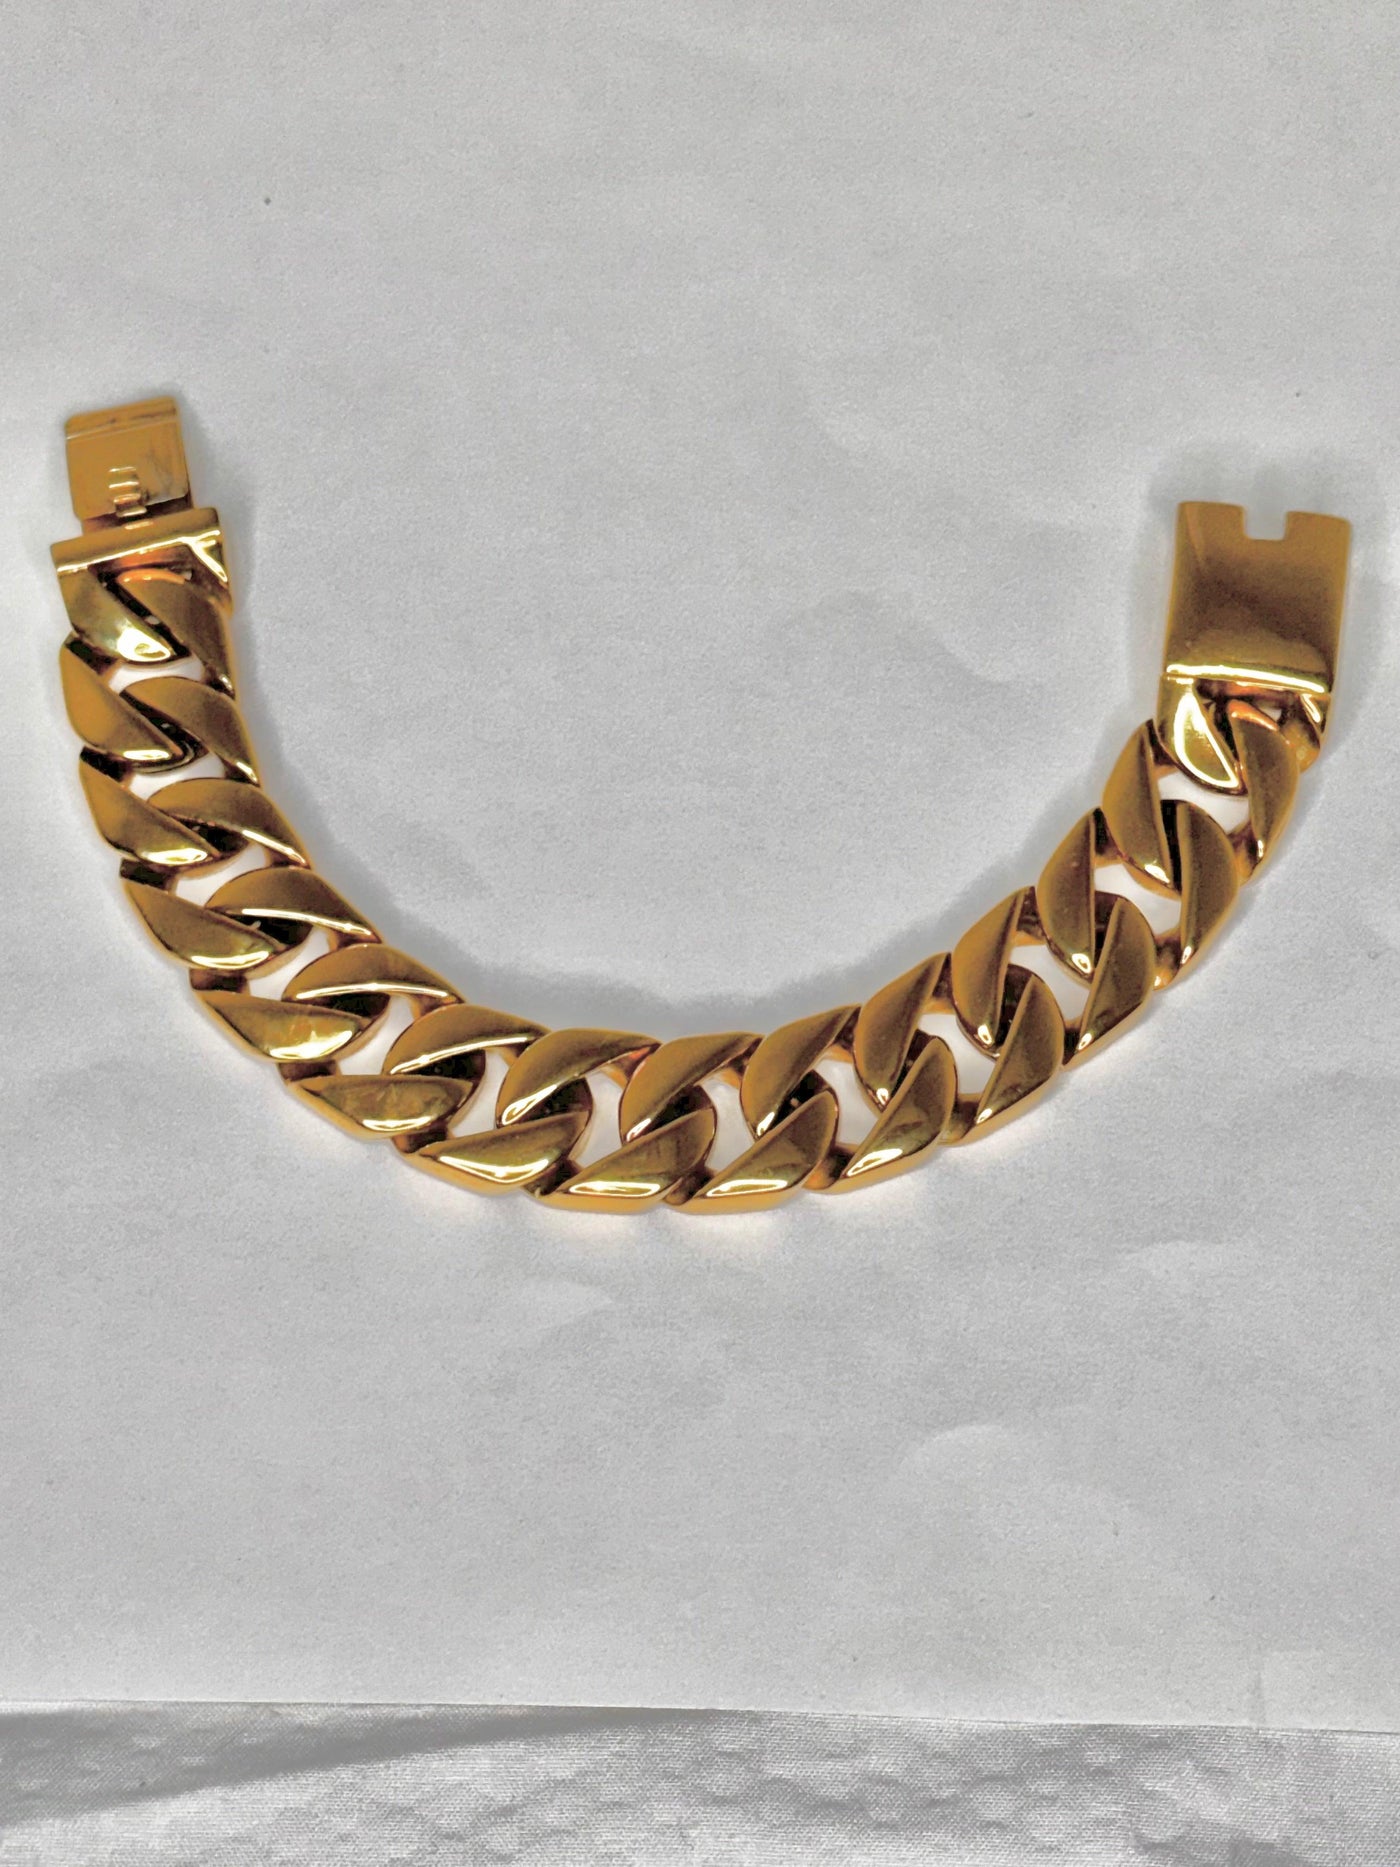 Heavy Duty Gold Plated Stainless Steel Bracelet - Brent's Bling